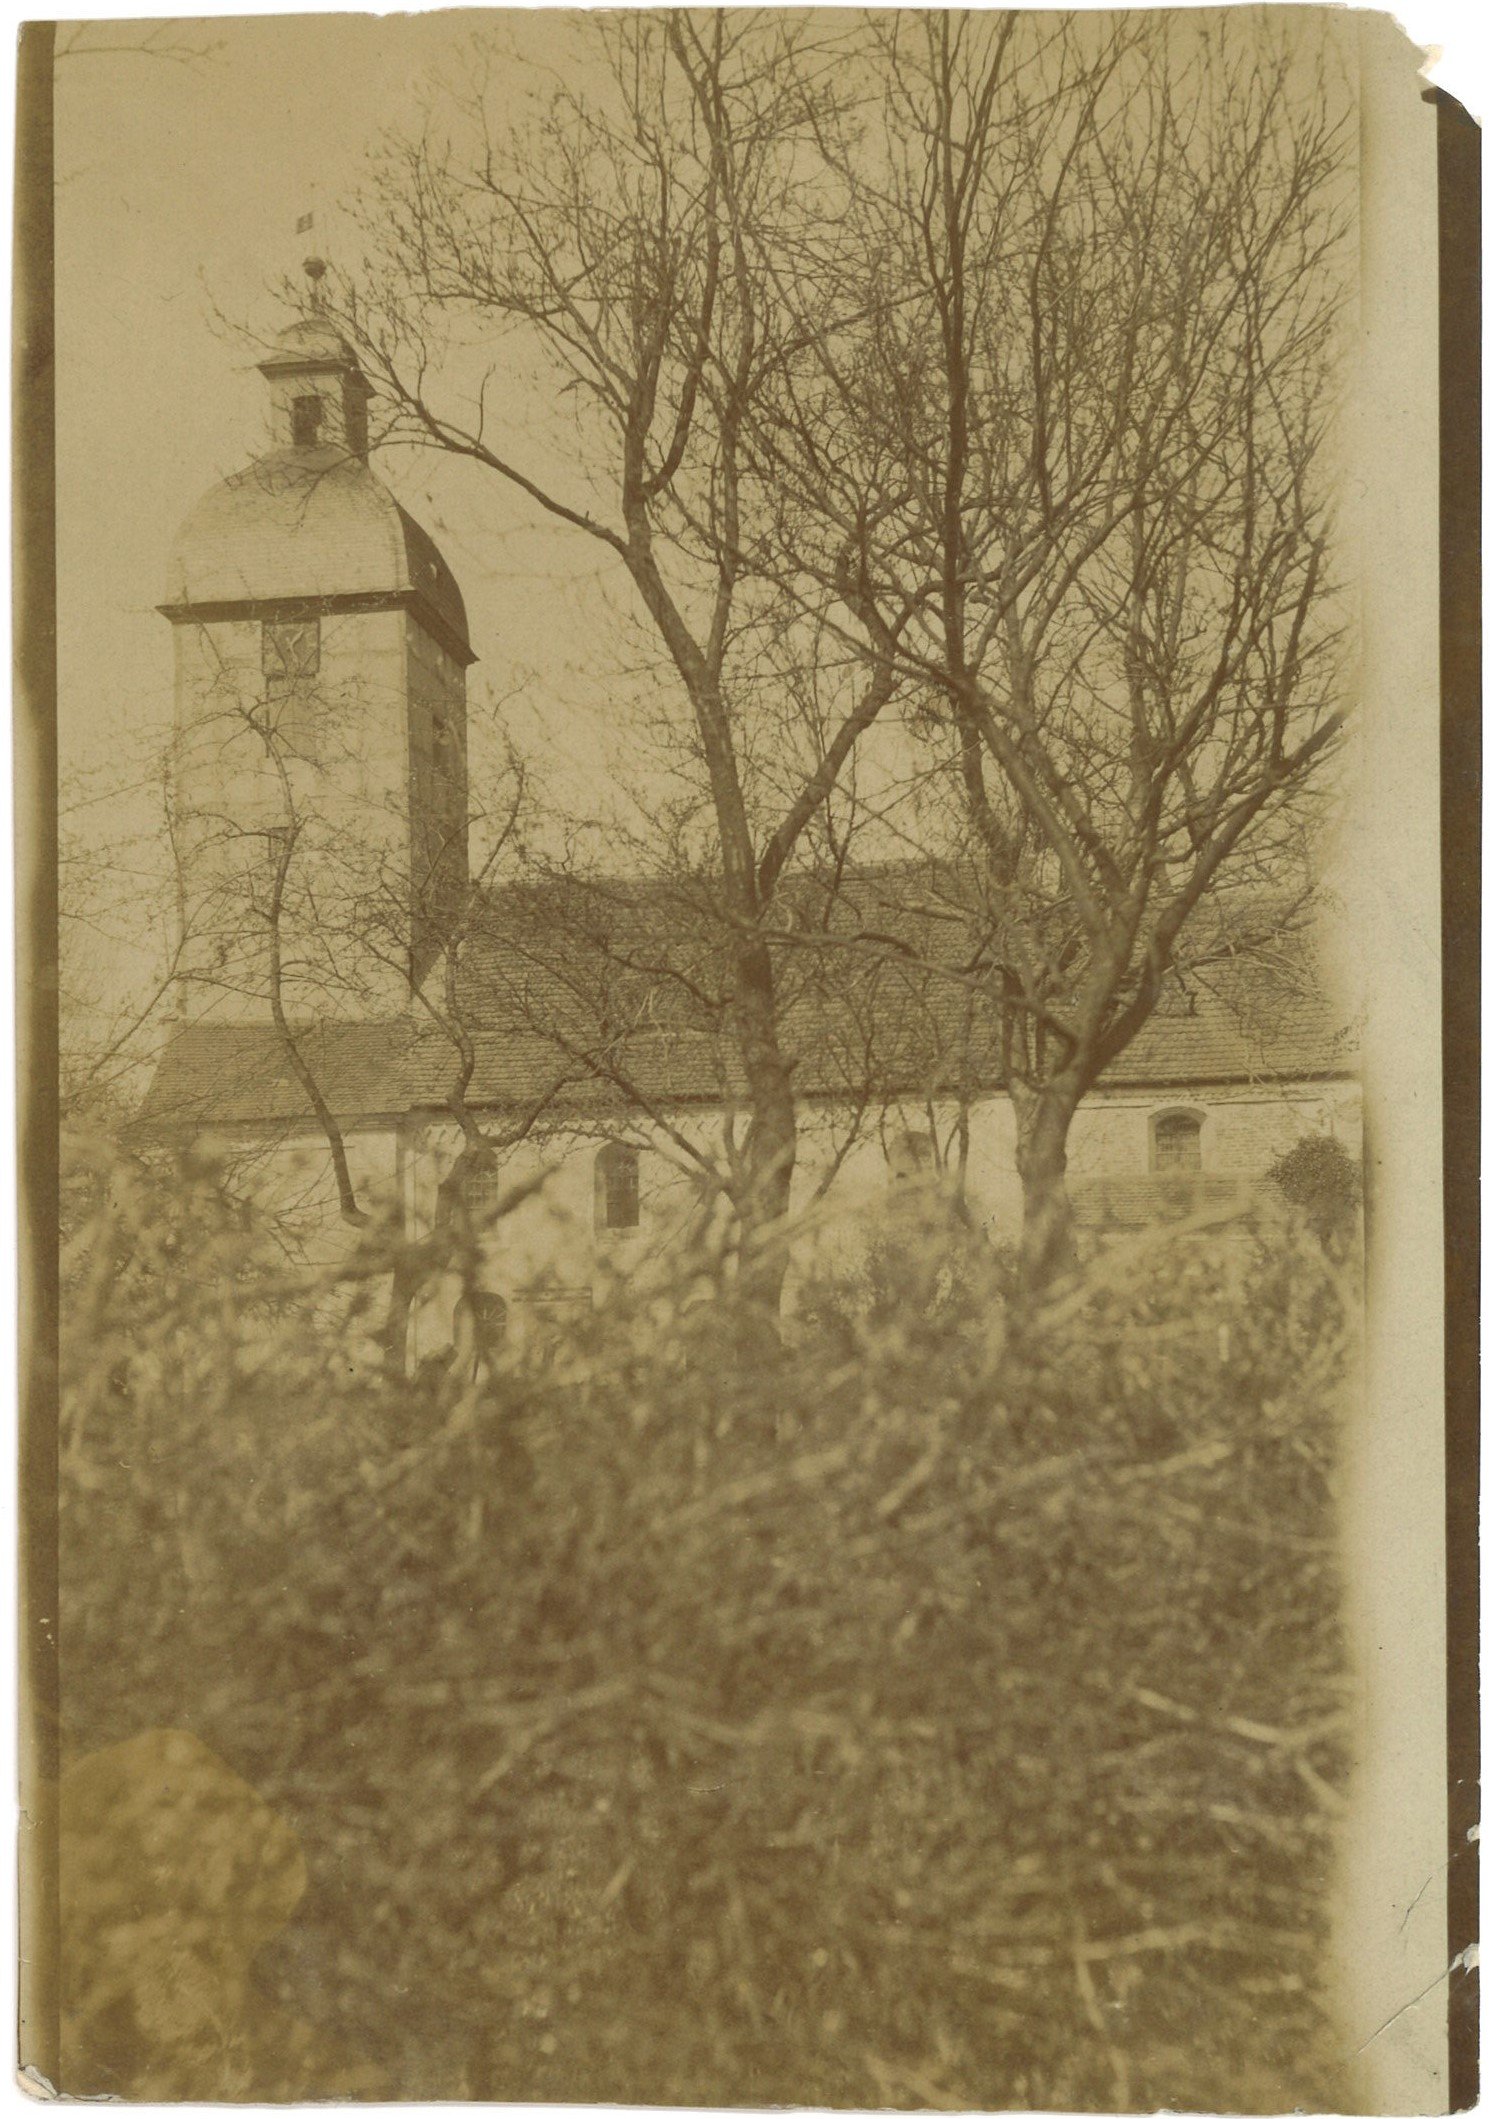 Wust: Dorfkirche von Süden (Landesgeschichtliche Vereinigung für die Mark Brandenburg e.V., Archiv CC BY)